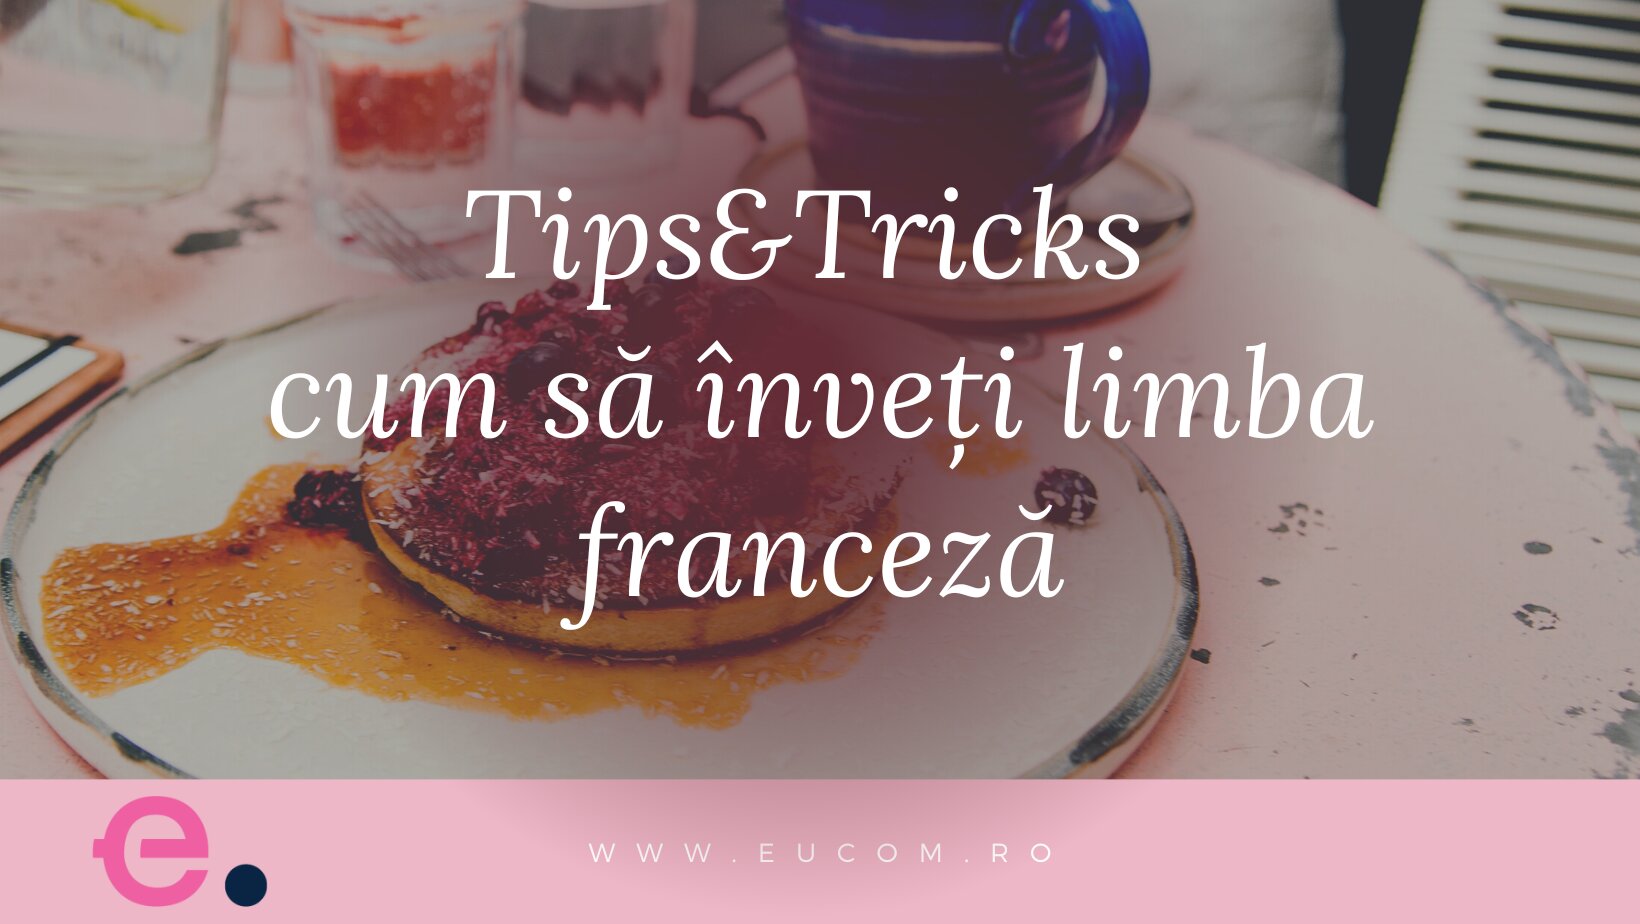 Tips & Tricks: Cum să înveți limba franceză mai ușor? - eucom.ro